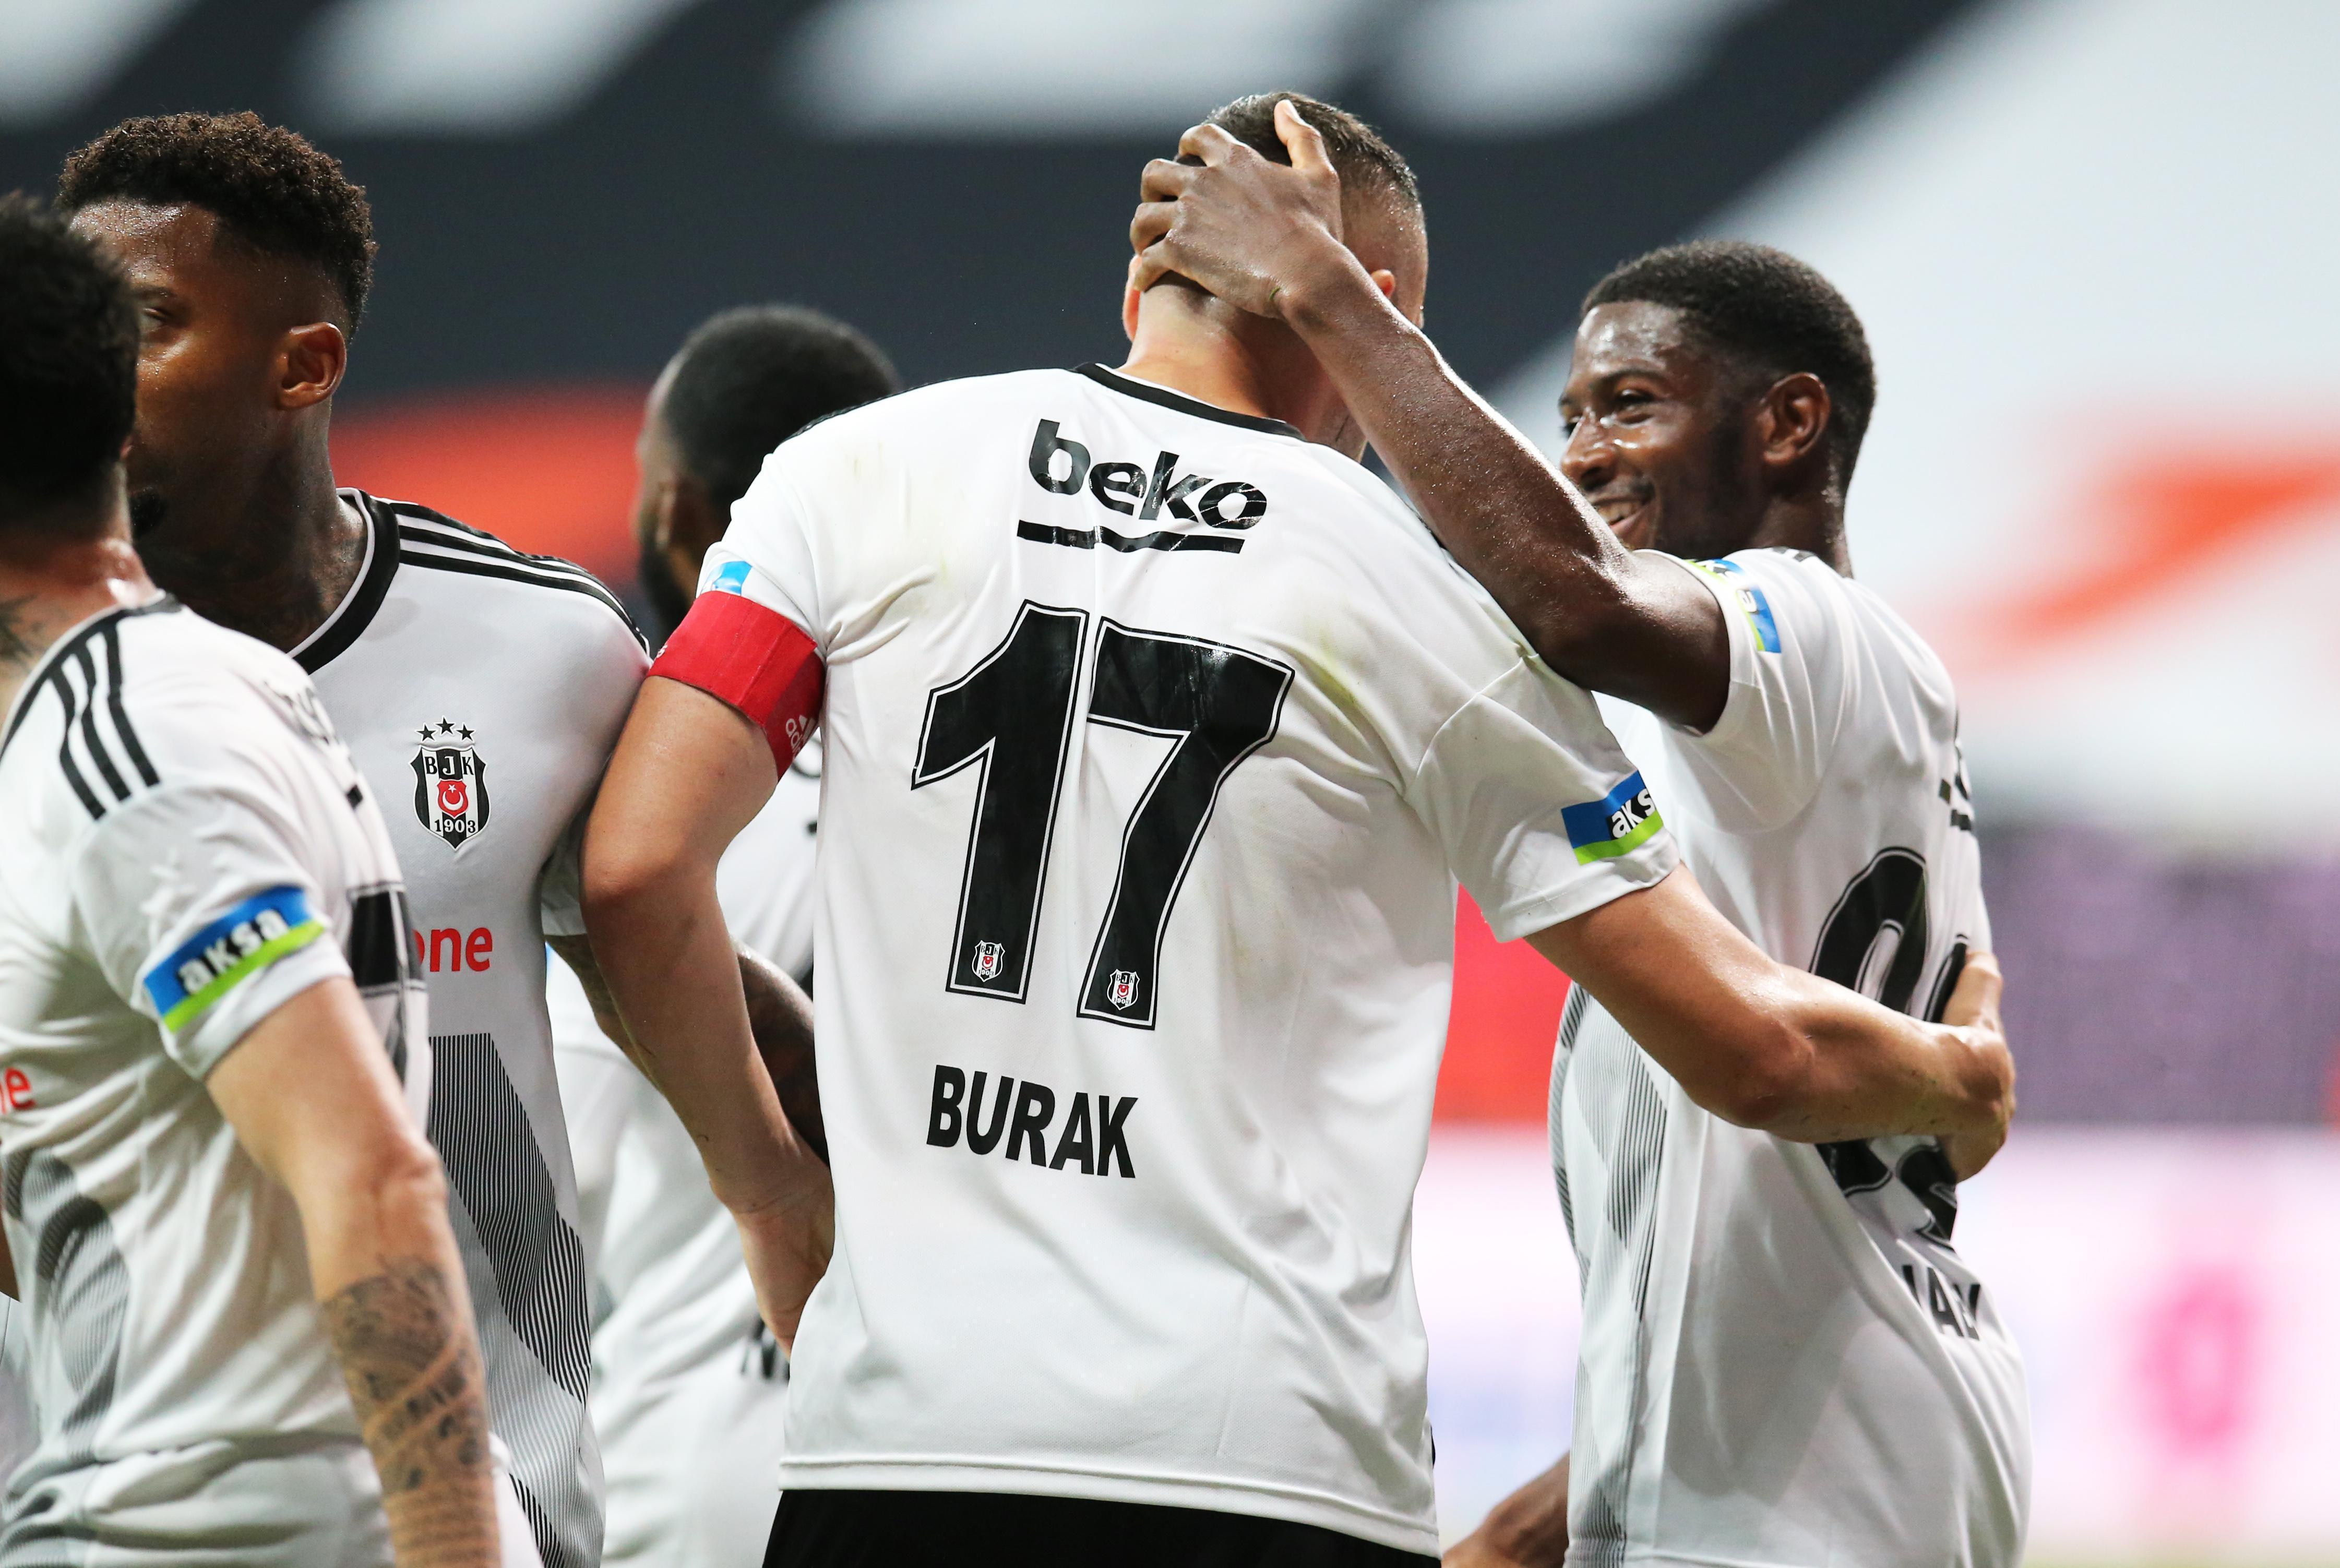 (ÖZET) Beşiktaş - Konyaspor maç sonucu: 3-0